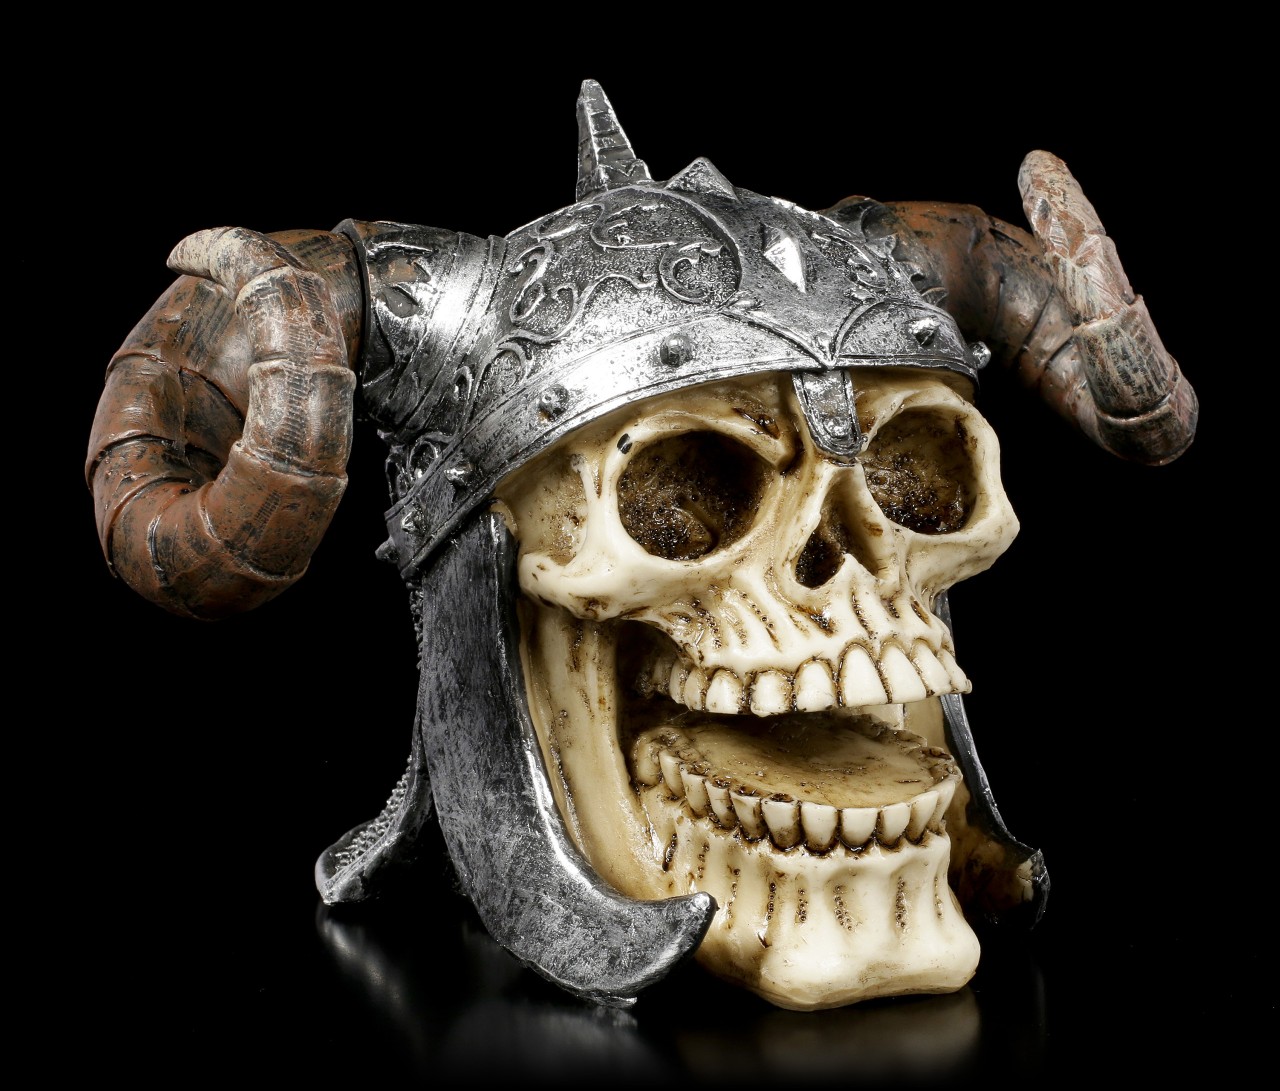 Totenkopf - Devils Helmet